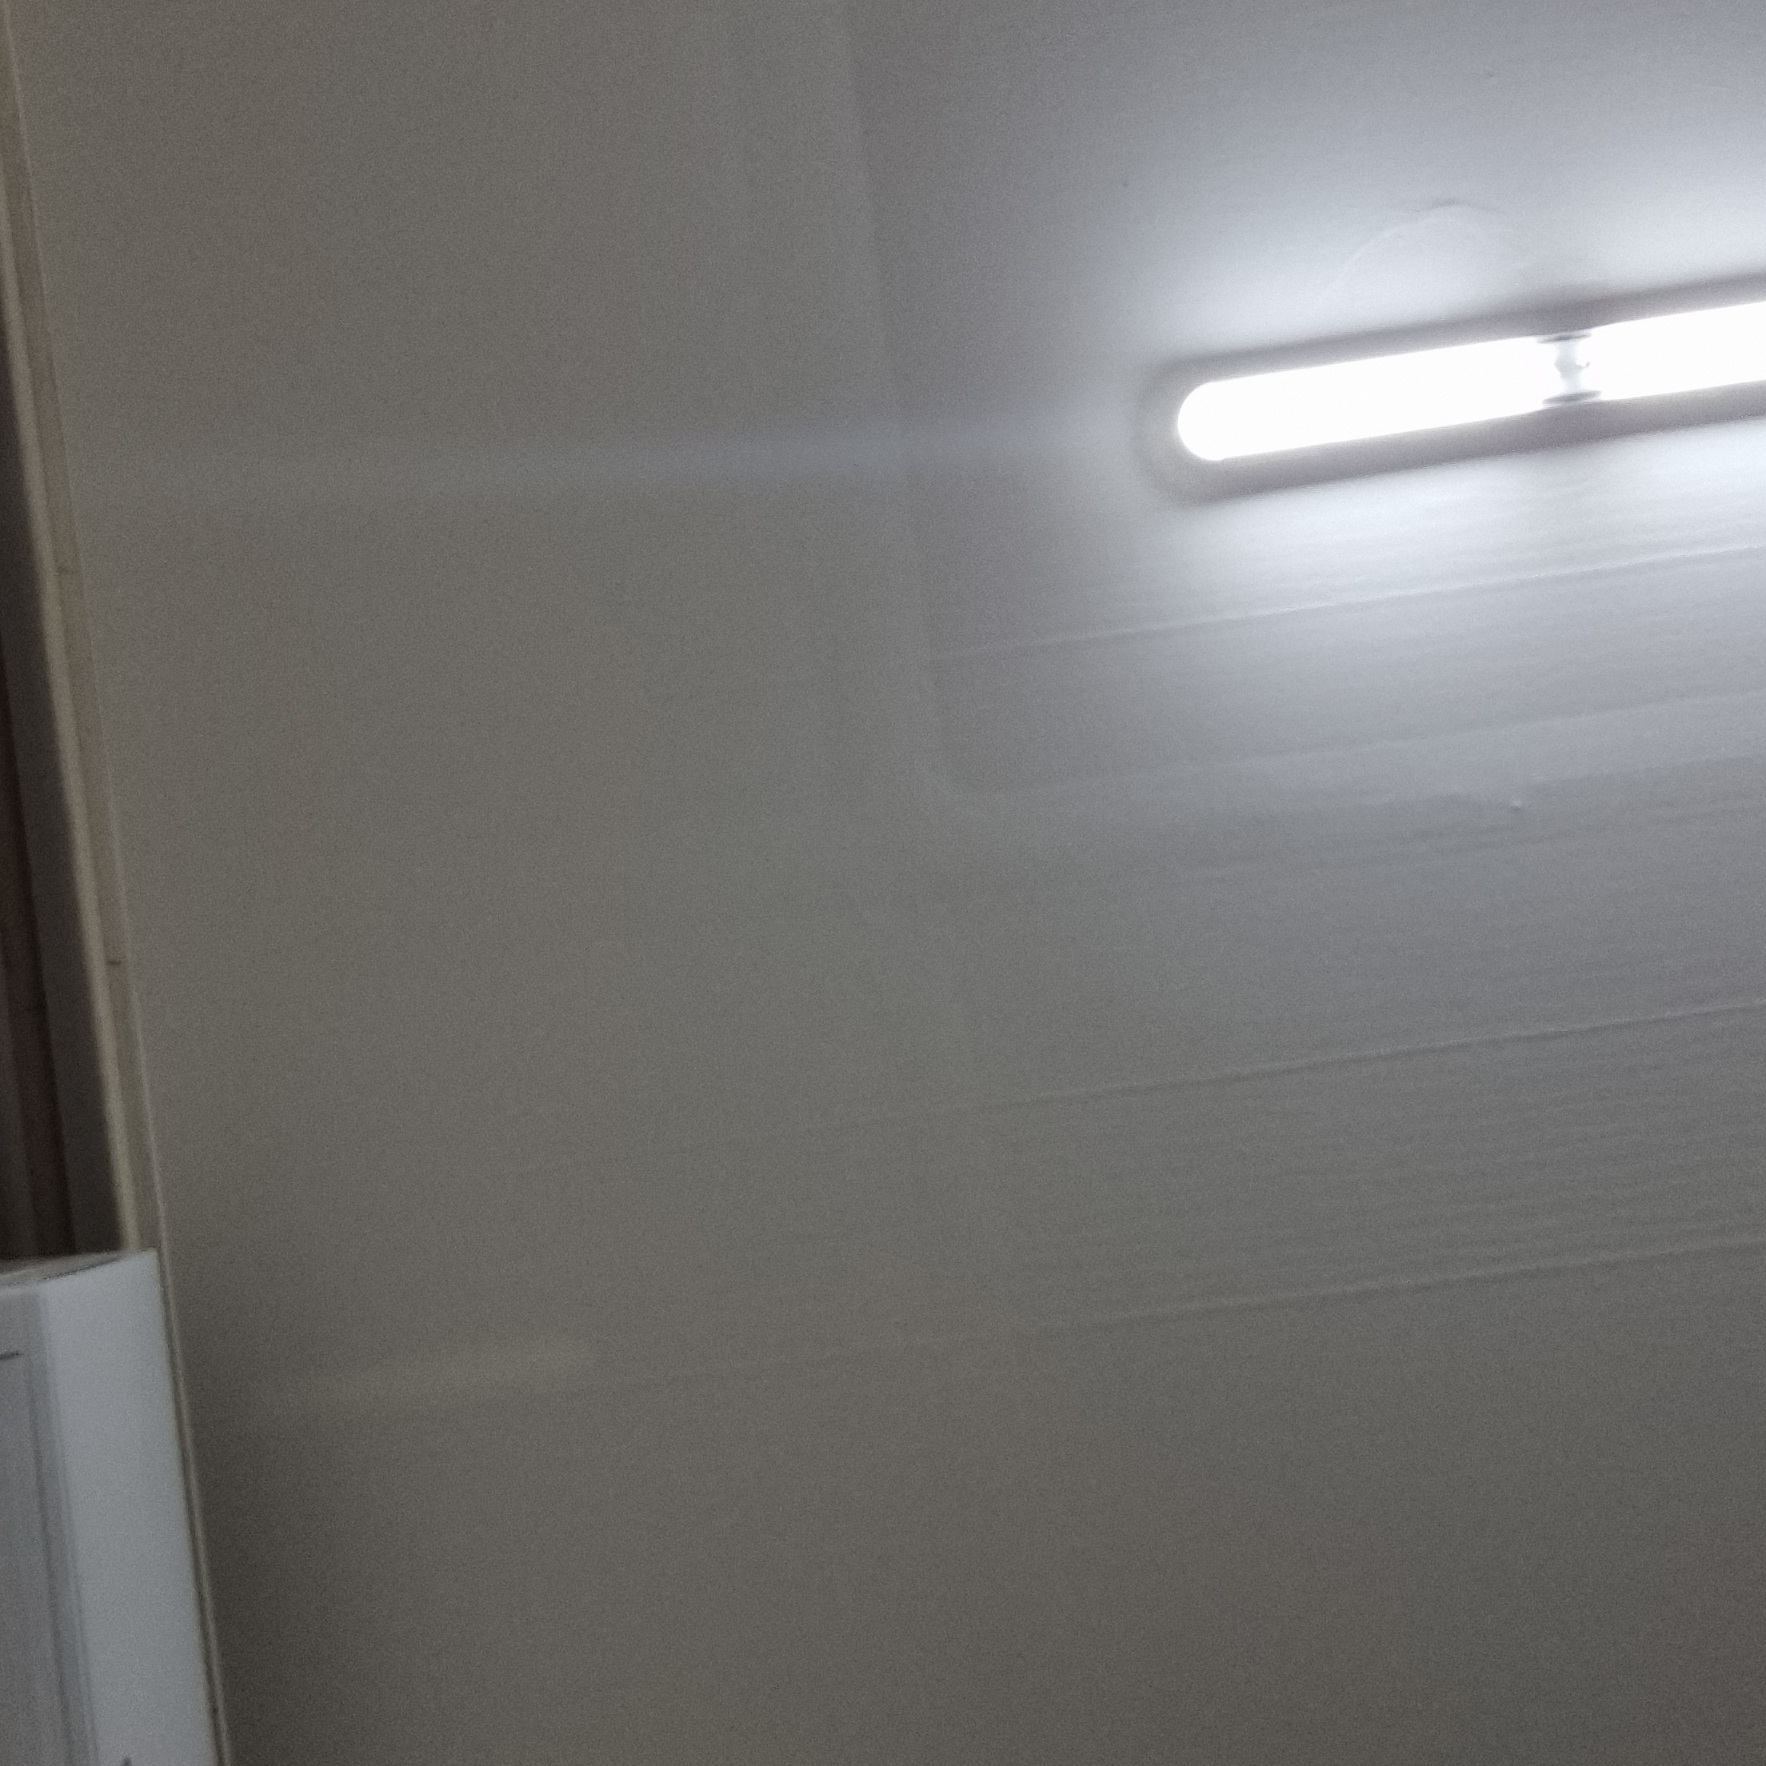 이 사진은 형광등이 1개 설치되어있는 방을 나타내는 사진입니다.